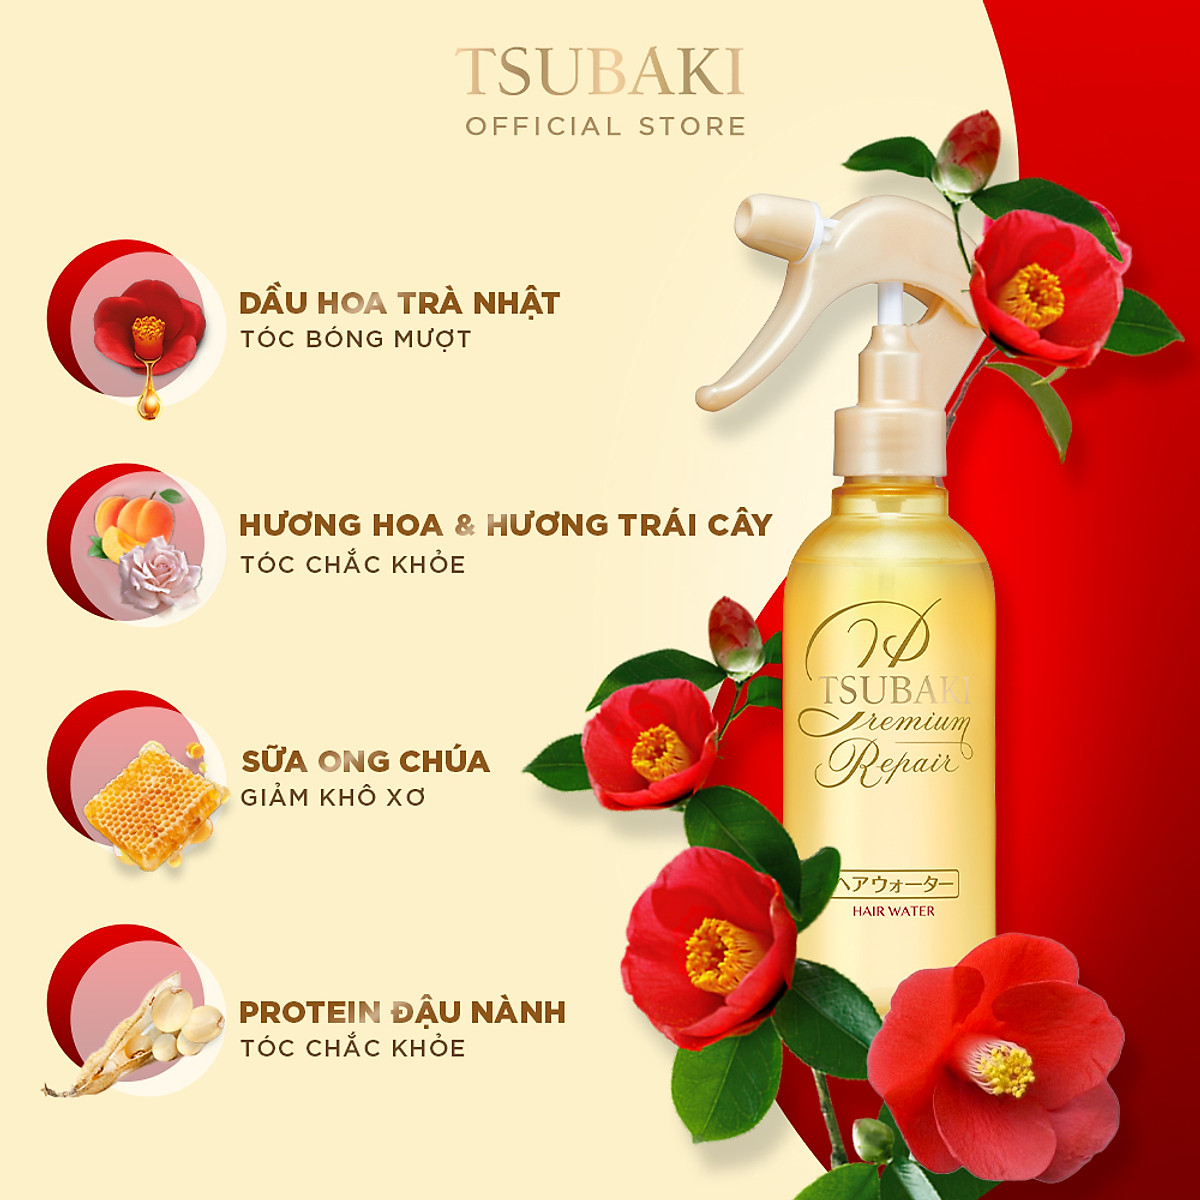 Vì sao không trải nghiệm xịt dưỡng tóc Tsubaki Premium Repair để tóc được chăm sóc tốt nhất. Với thành phần chiết xuất từ dầu hoa trà giúp phục hồi chức năng bảo vệ tóc, sản phẩm này sẽ giúp tóc của bạn trở nên khỏe mạnh và mượt mà hơn.